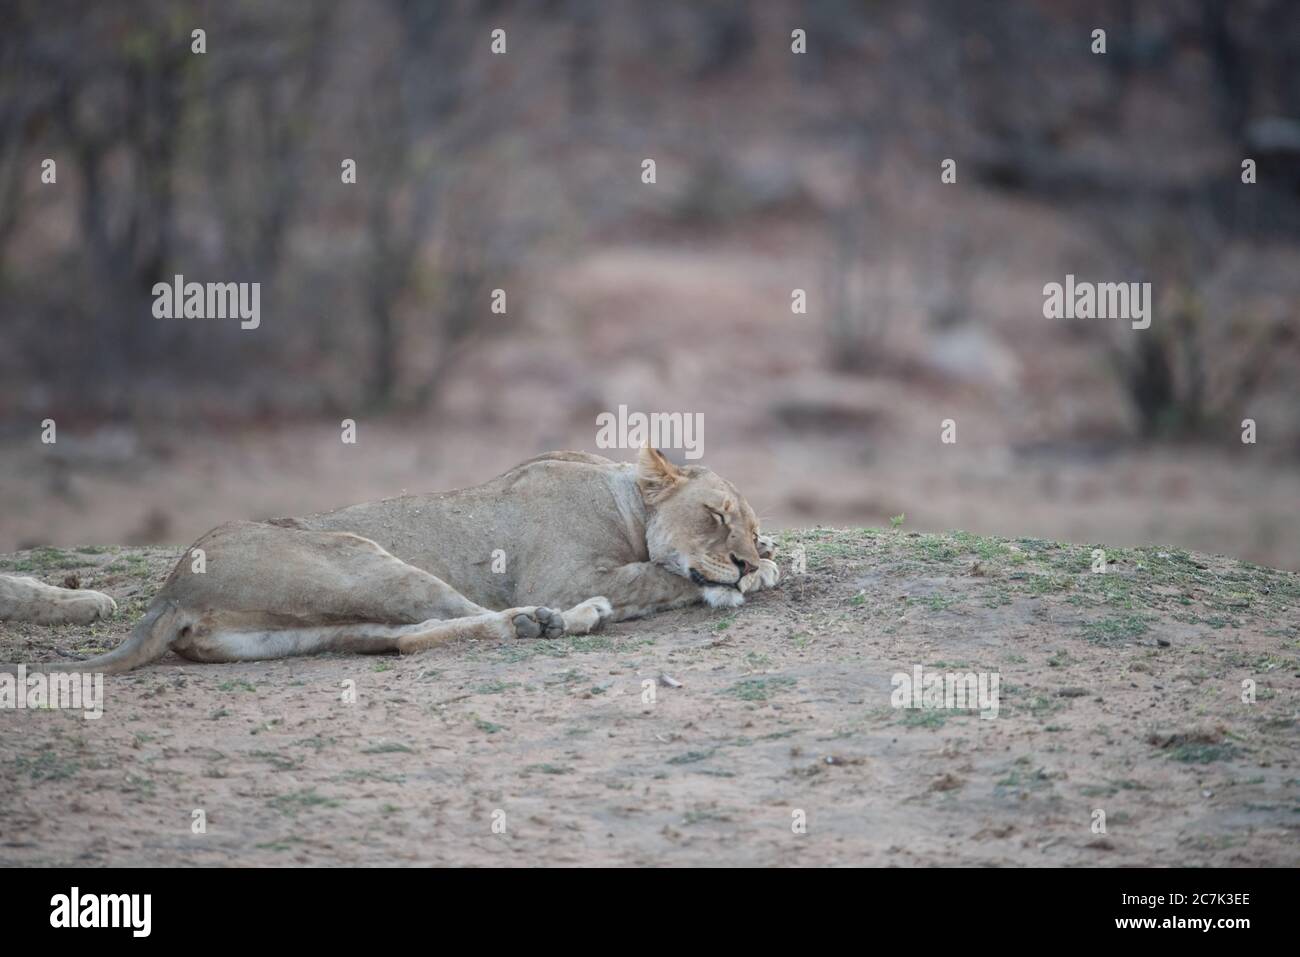 Le lion féminin dort sur le sol avec un arrière-plan flou Banque D'Images